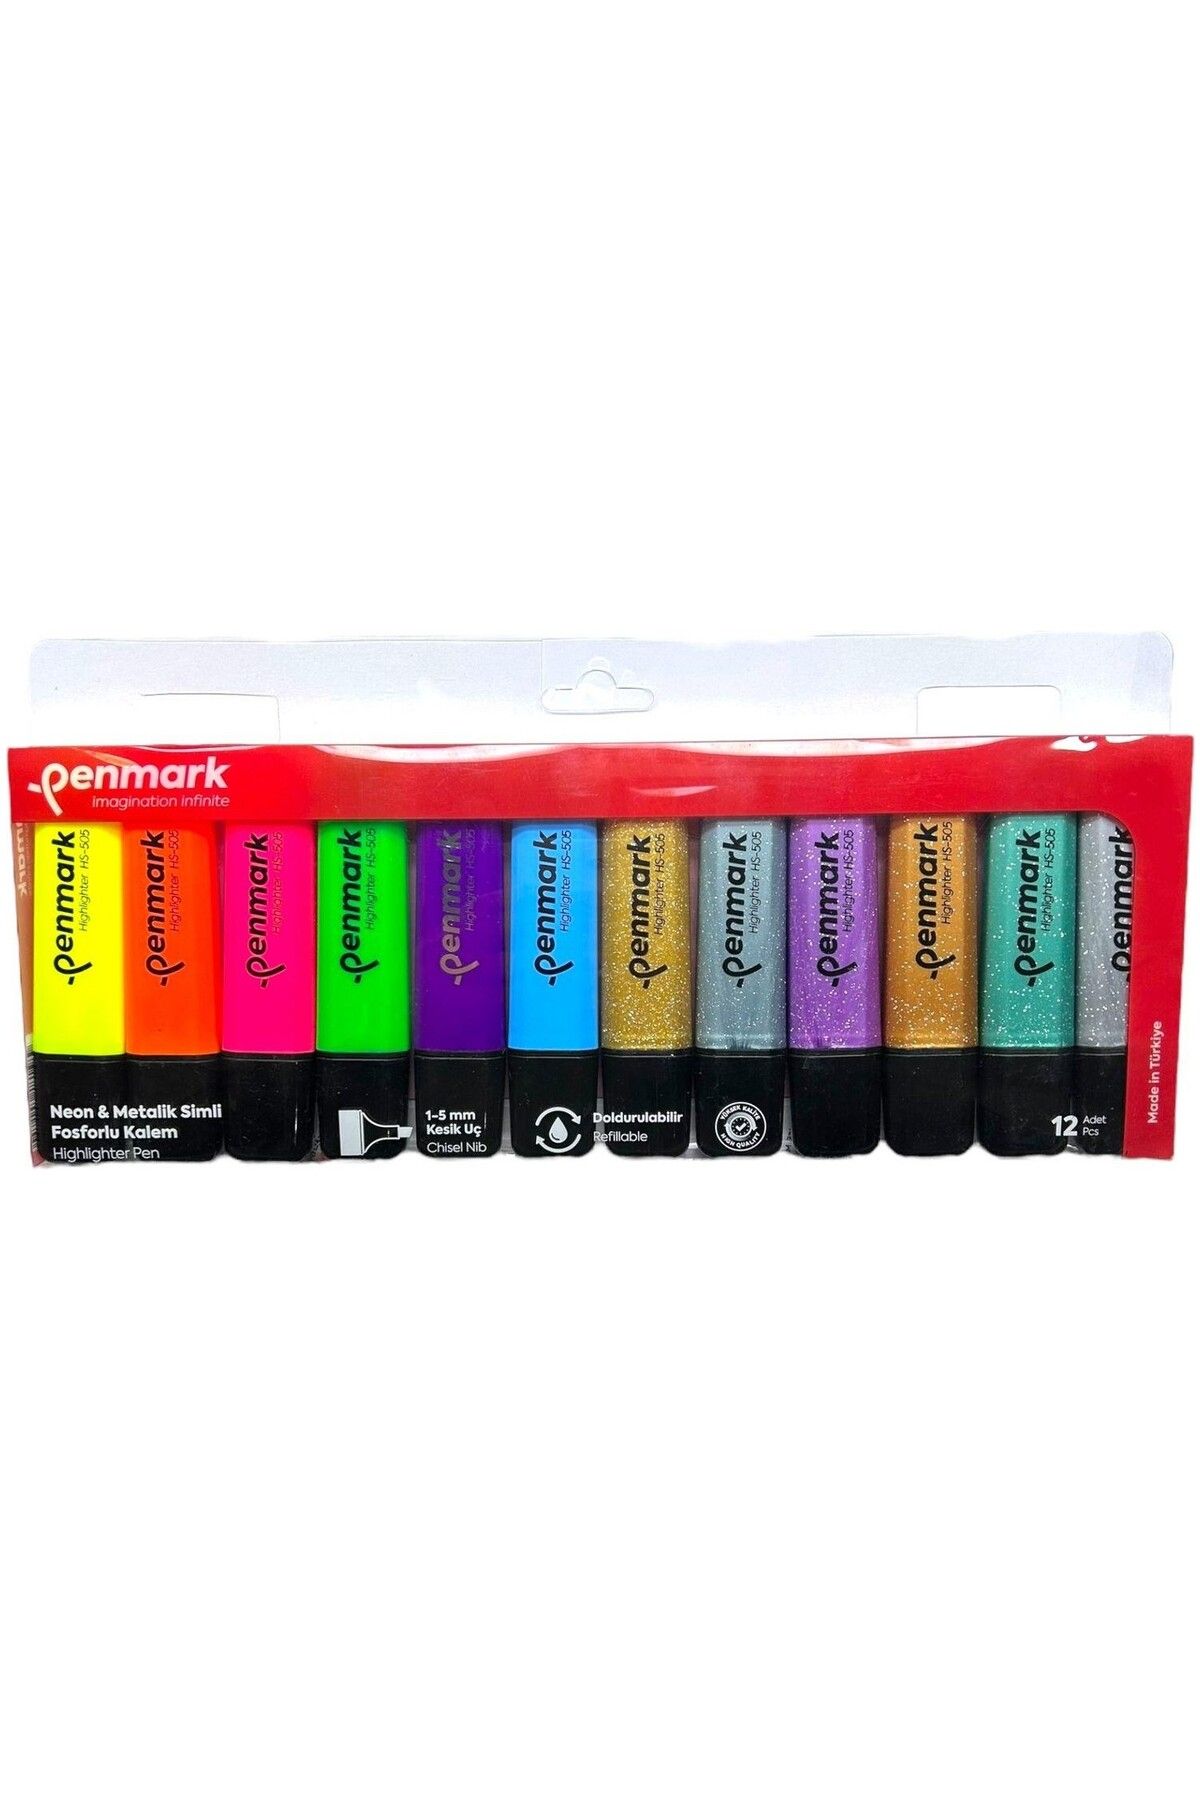 penmark Fosforlu Kalem 12 Li Asetat Karışık Renk 6 Neon+ 6 Simli